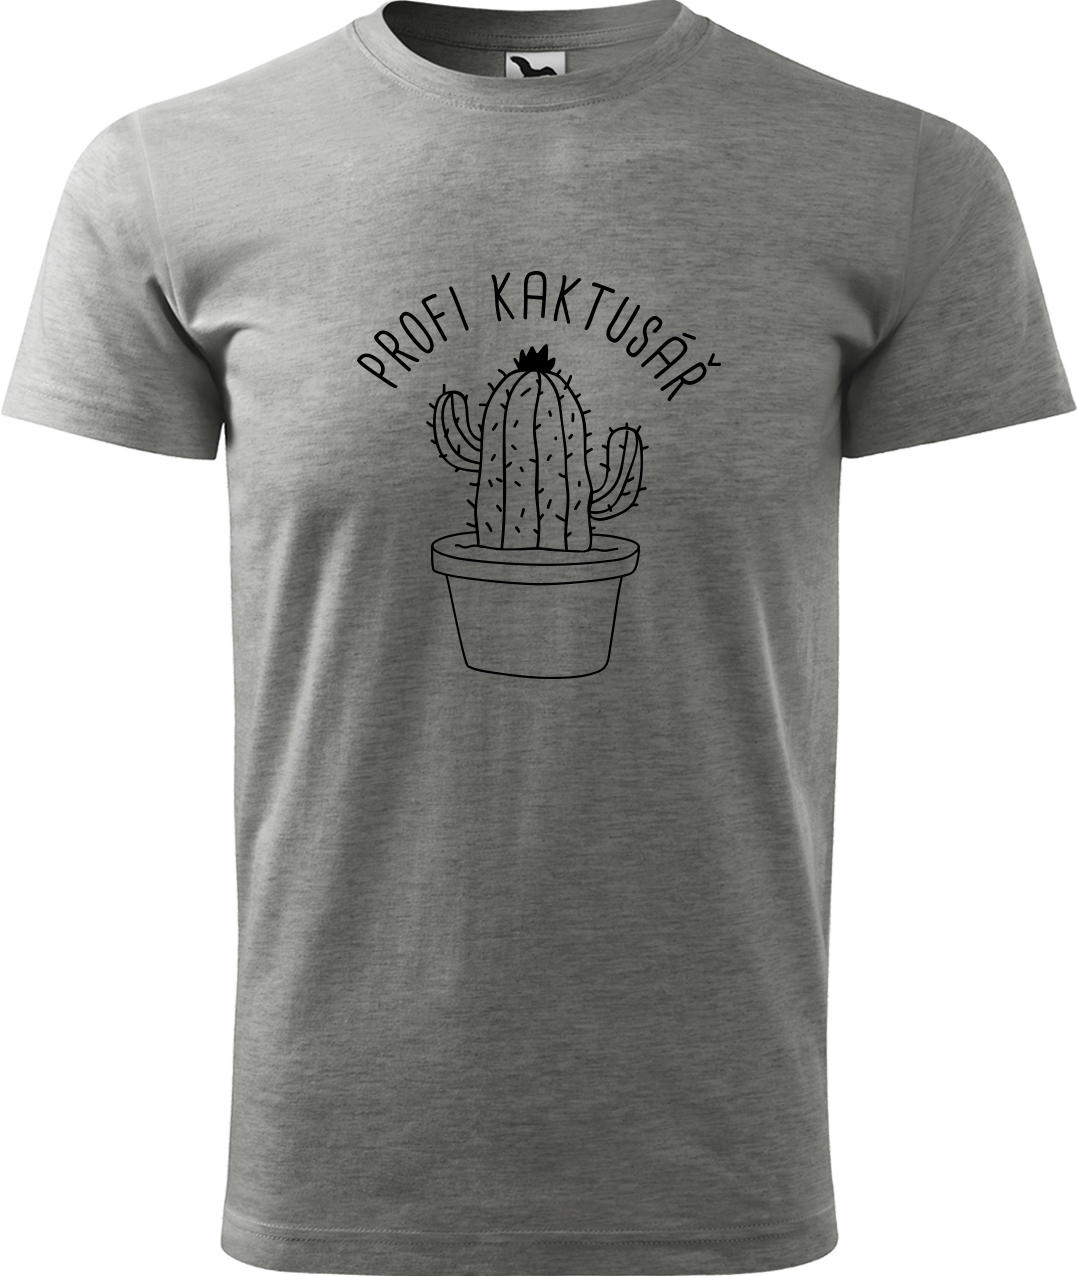 Tričko pro zahradníka - Profi kaktusář Velikost: L, Barva: Tmavě šedý melír (12), Střih: pánský